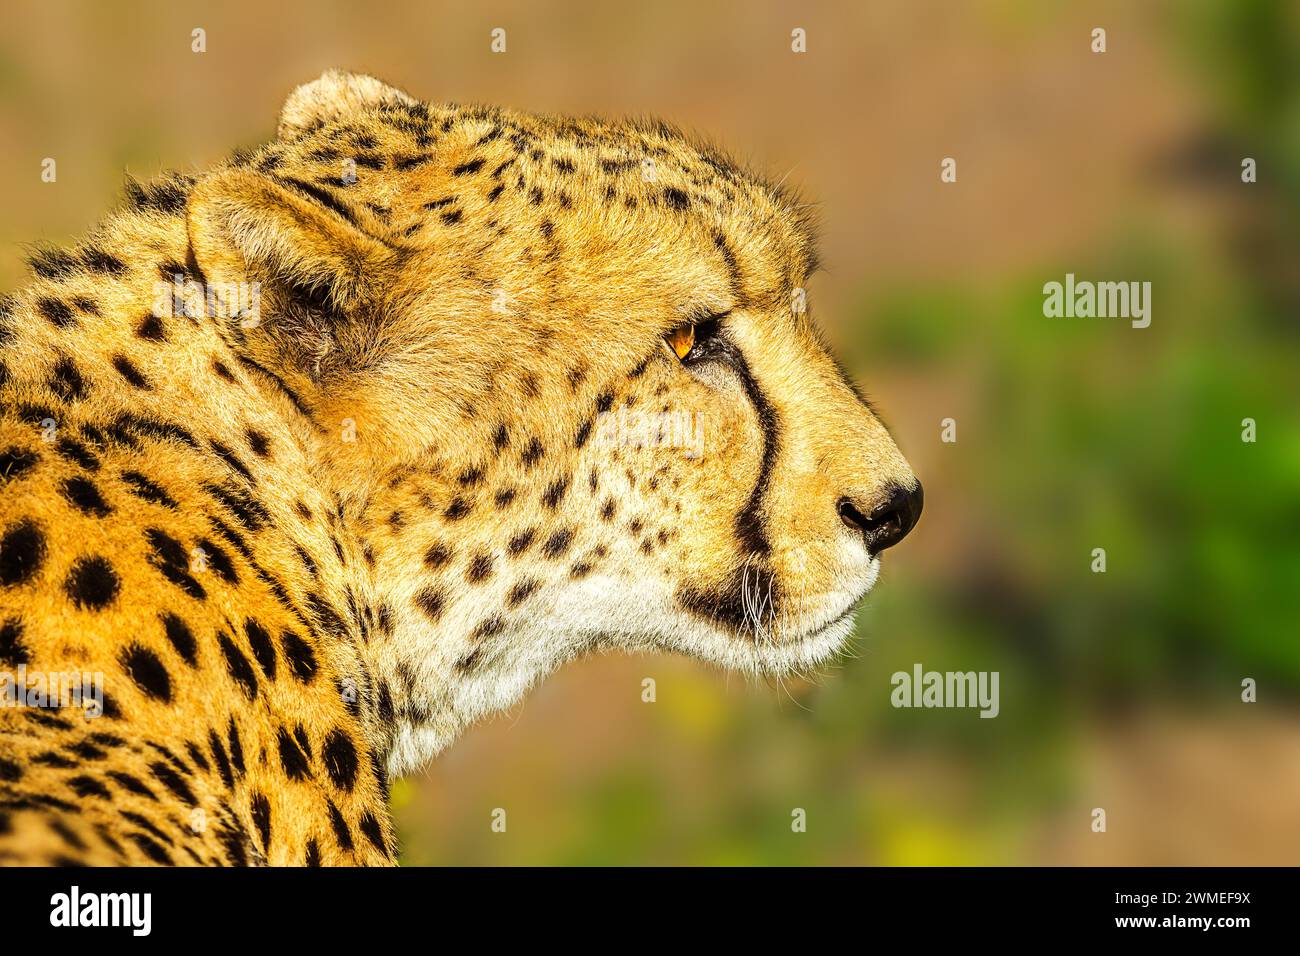 Portrait von cheetah Art Acinonyx jubatus, Familie der Feliden, in Südafrika. Seitenansicht der afrikanischen Geparden auf unscharfen Hintergrund im natürlichen Lebensraum Stockfoto